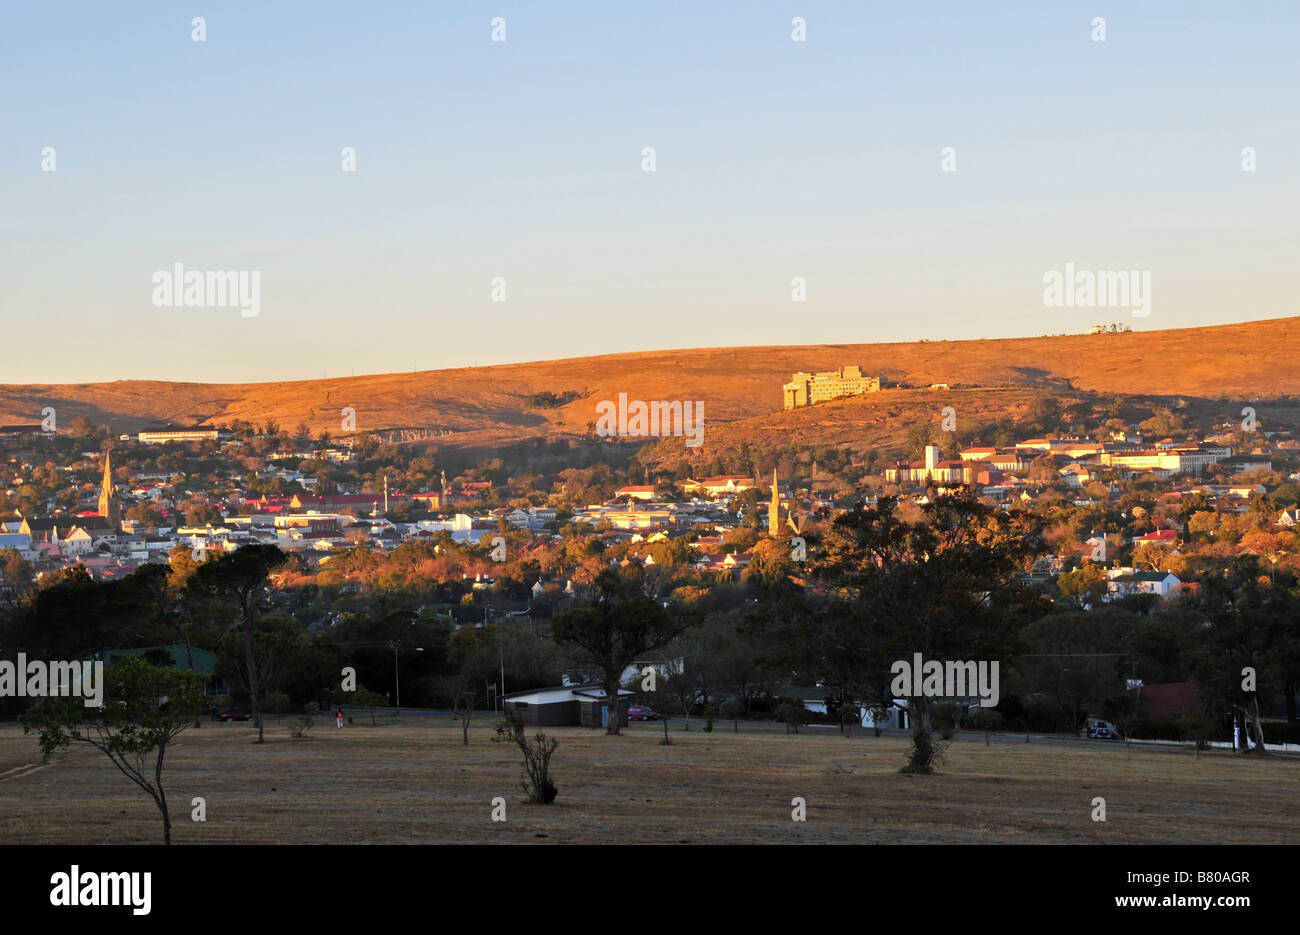 Le soleil d'hiver tôt le matin trois spots icônes culturelles de la ville de Grahamstown, Afrique du Sud Banque D'Images